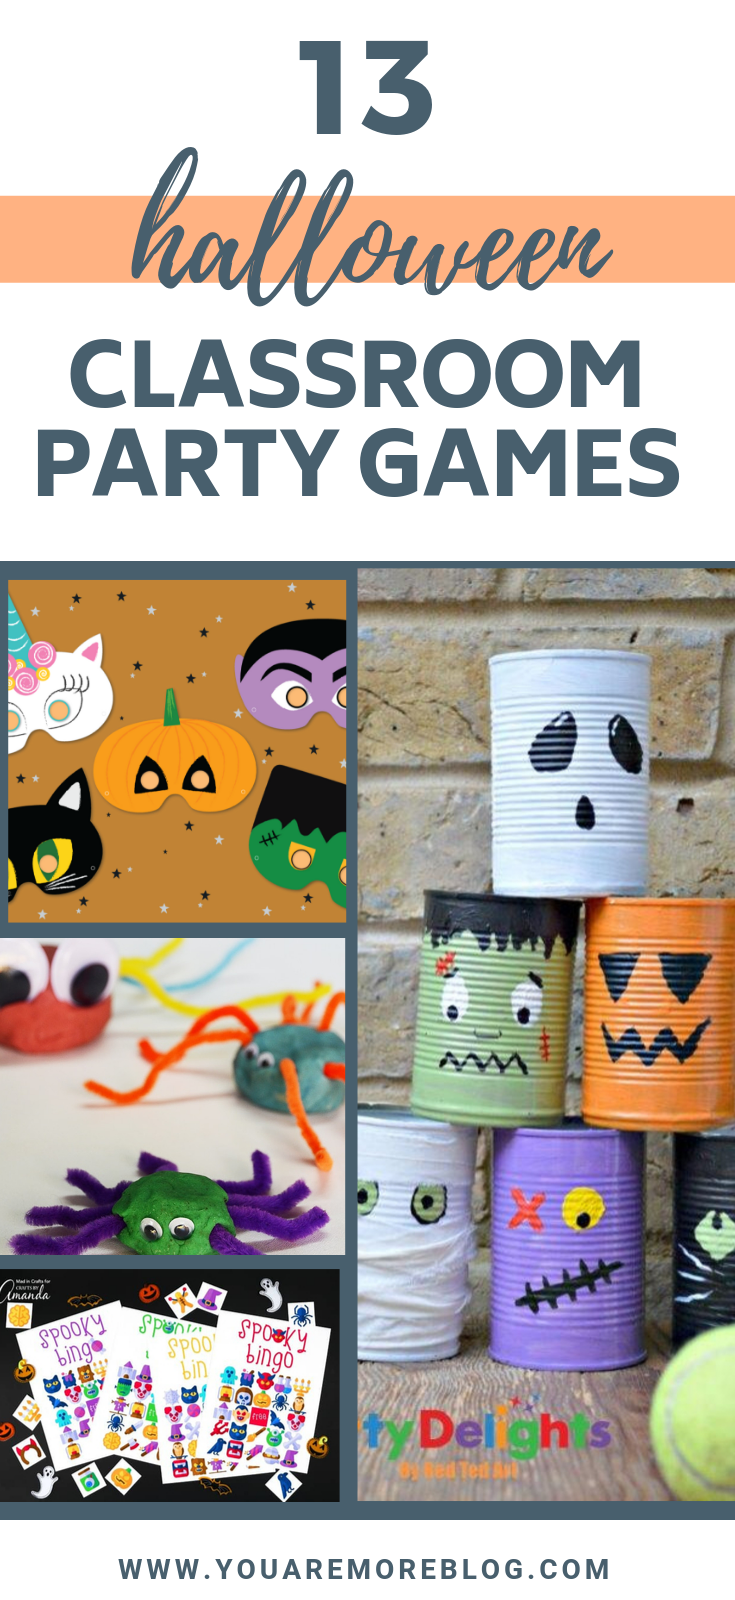 https://youaremoreblog.com/wp-content/uploads/2019/10/halloween-classroom-party-games-activities-1.png